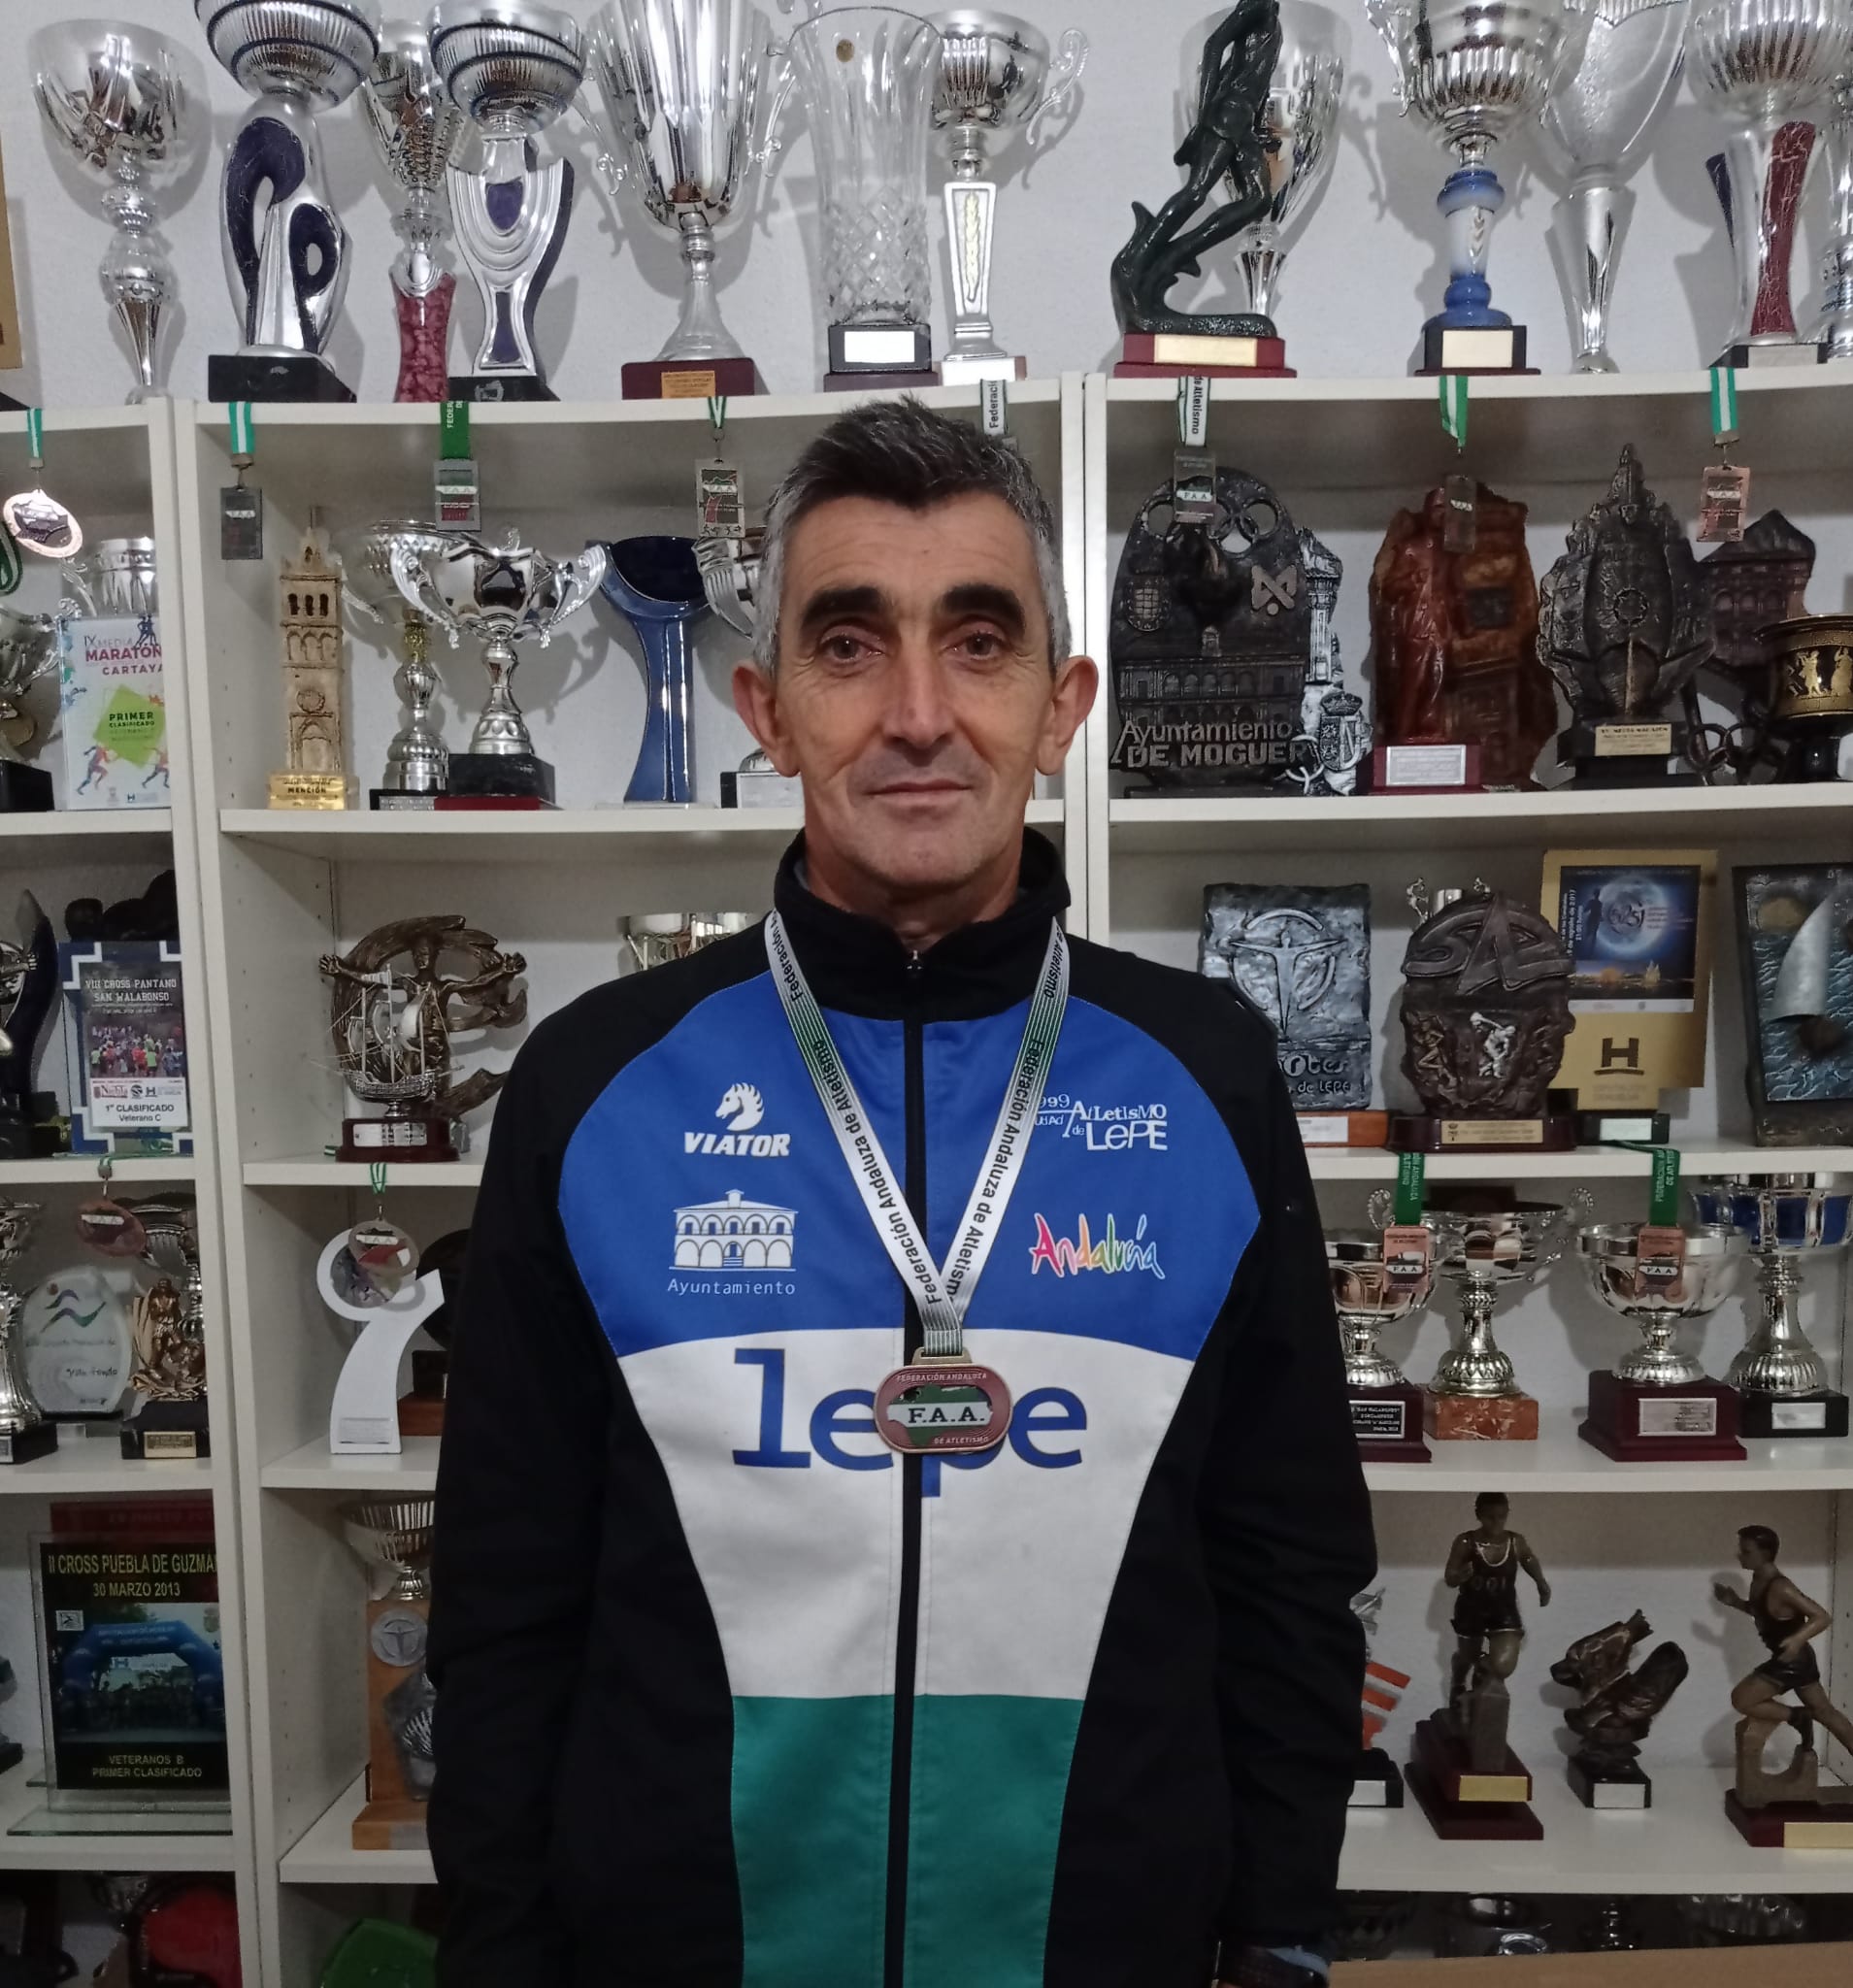 Francisco José Muriel Camacho “Oche”, campeón de Andalucía de campo a través – Enrique Rodríguez Abreu mejor juvenil onubense